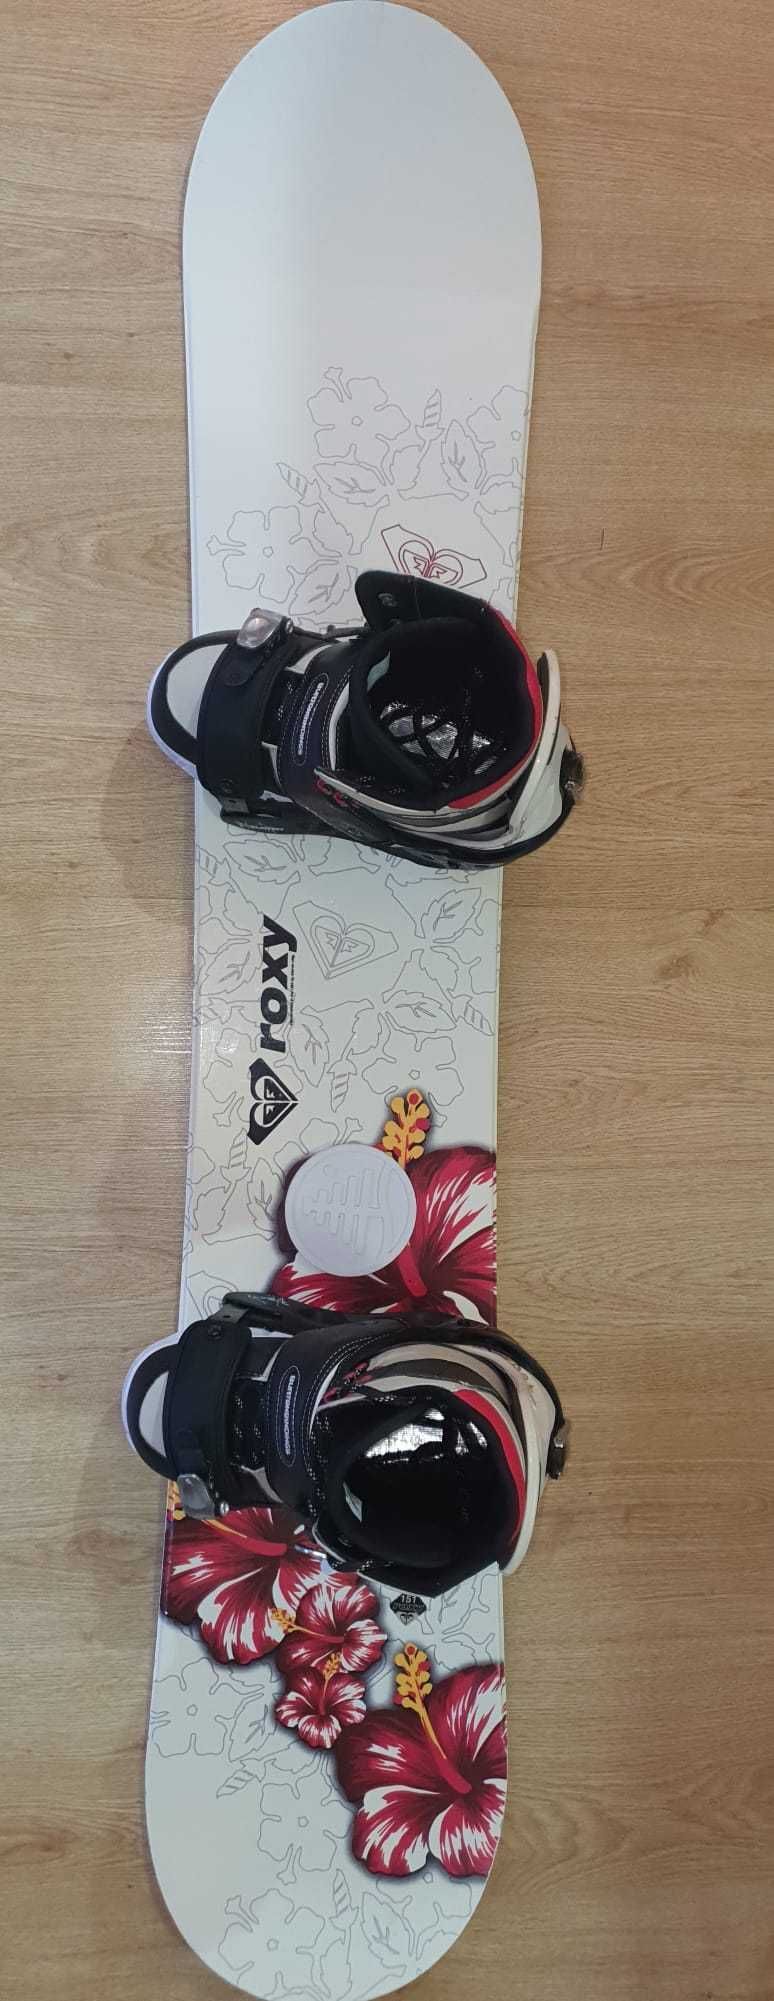 Prancha 151, binding e botas de snowboard impecáveis!